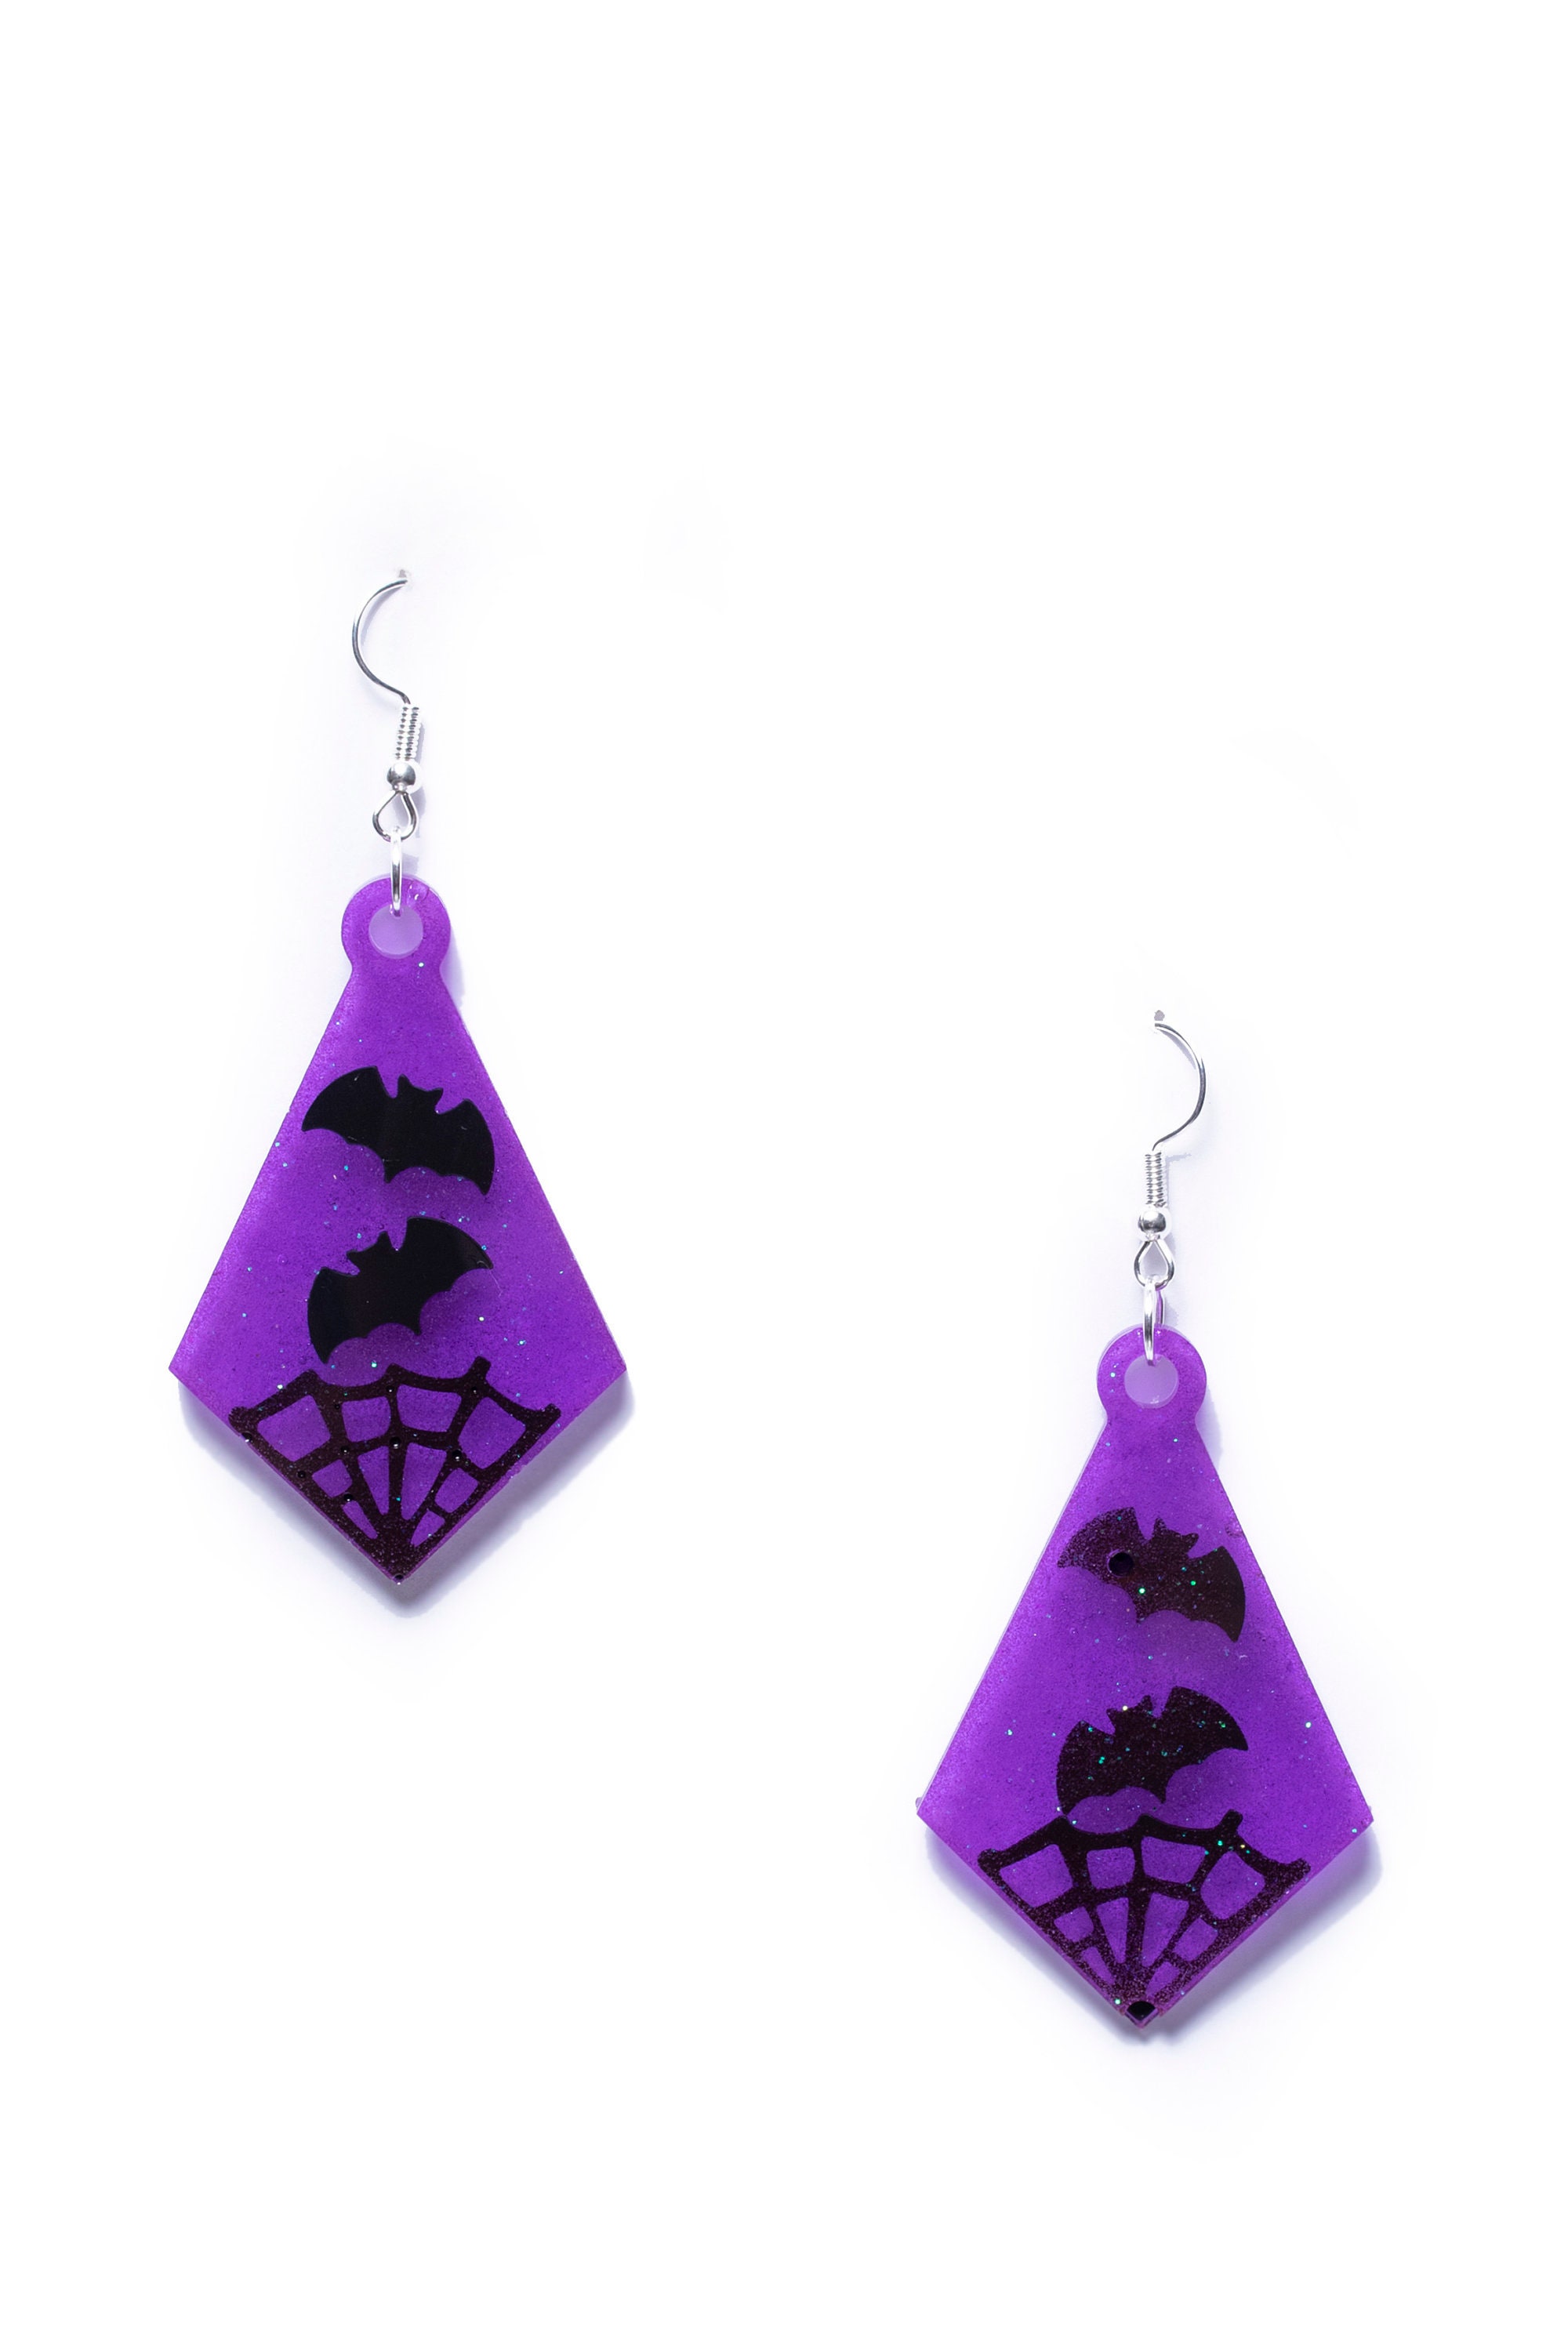 Bats & Webs Glowing Purple Diamond-shaped Bat Earrings Medium - Etsy